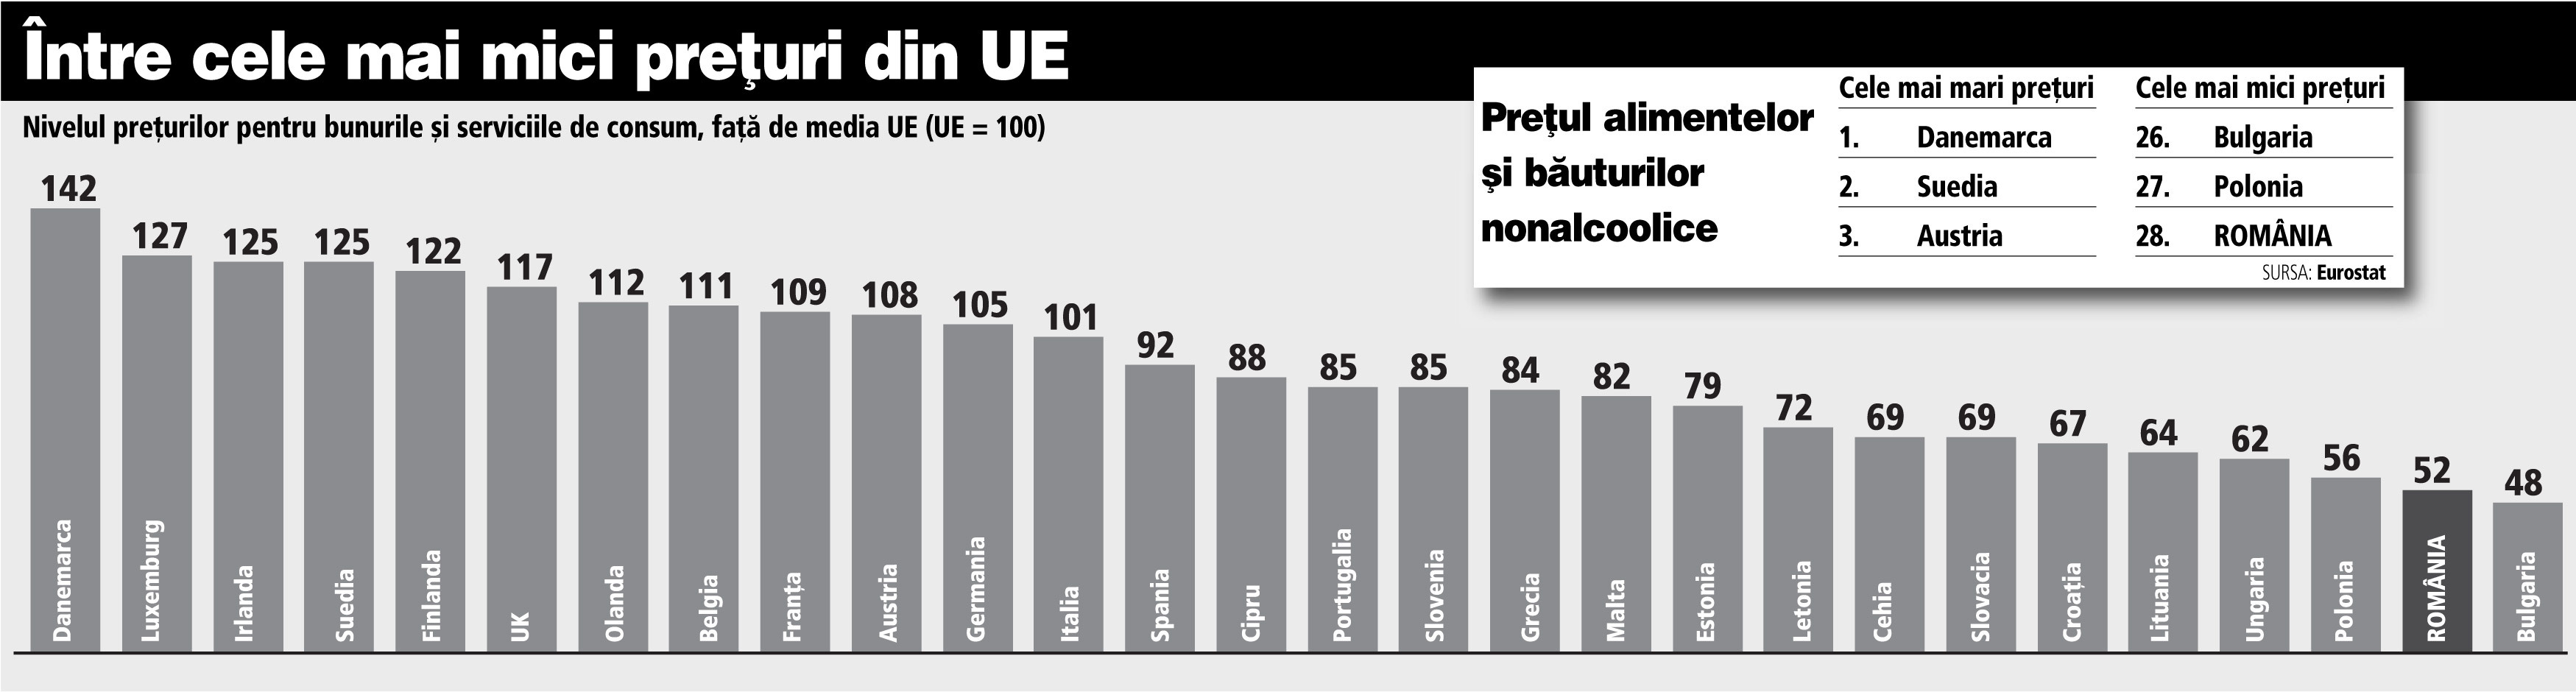 România are cele mai mici preţuri din UE la alimente şi băuturi nealcoolice